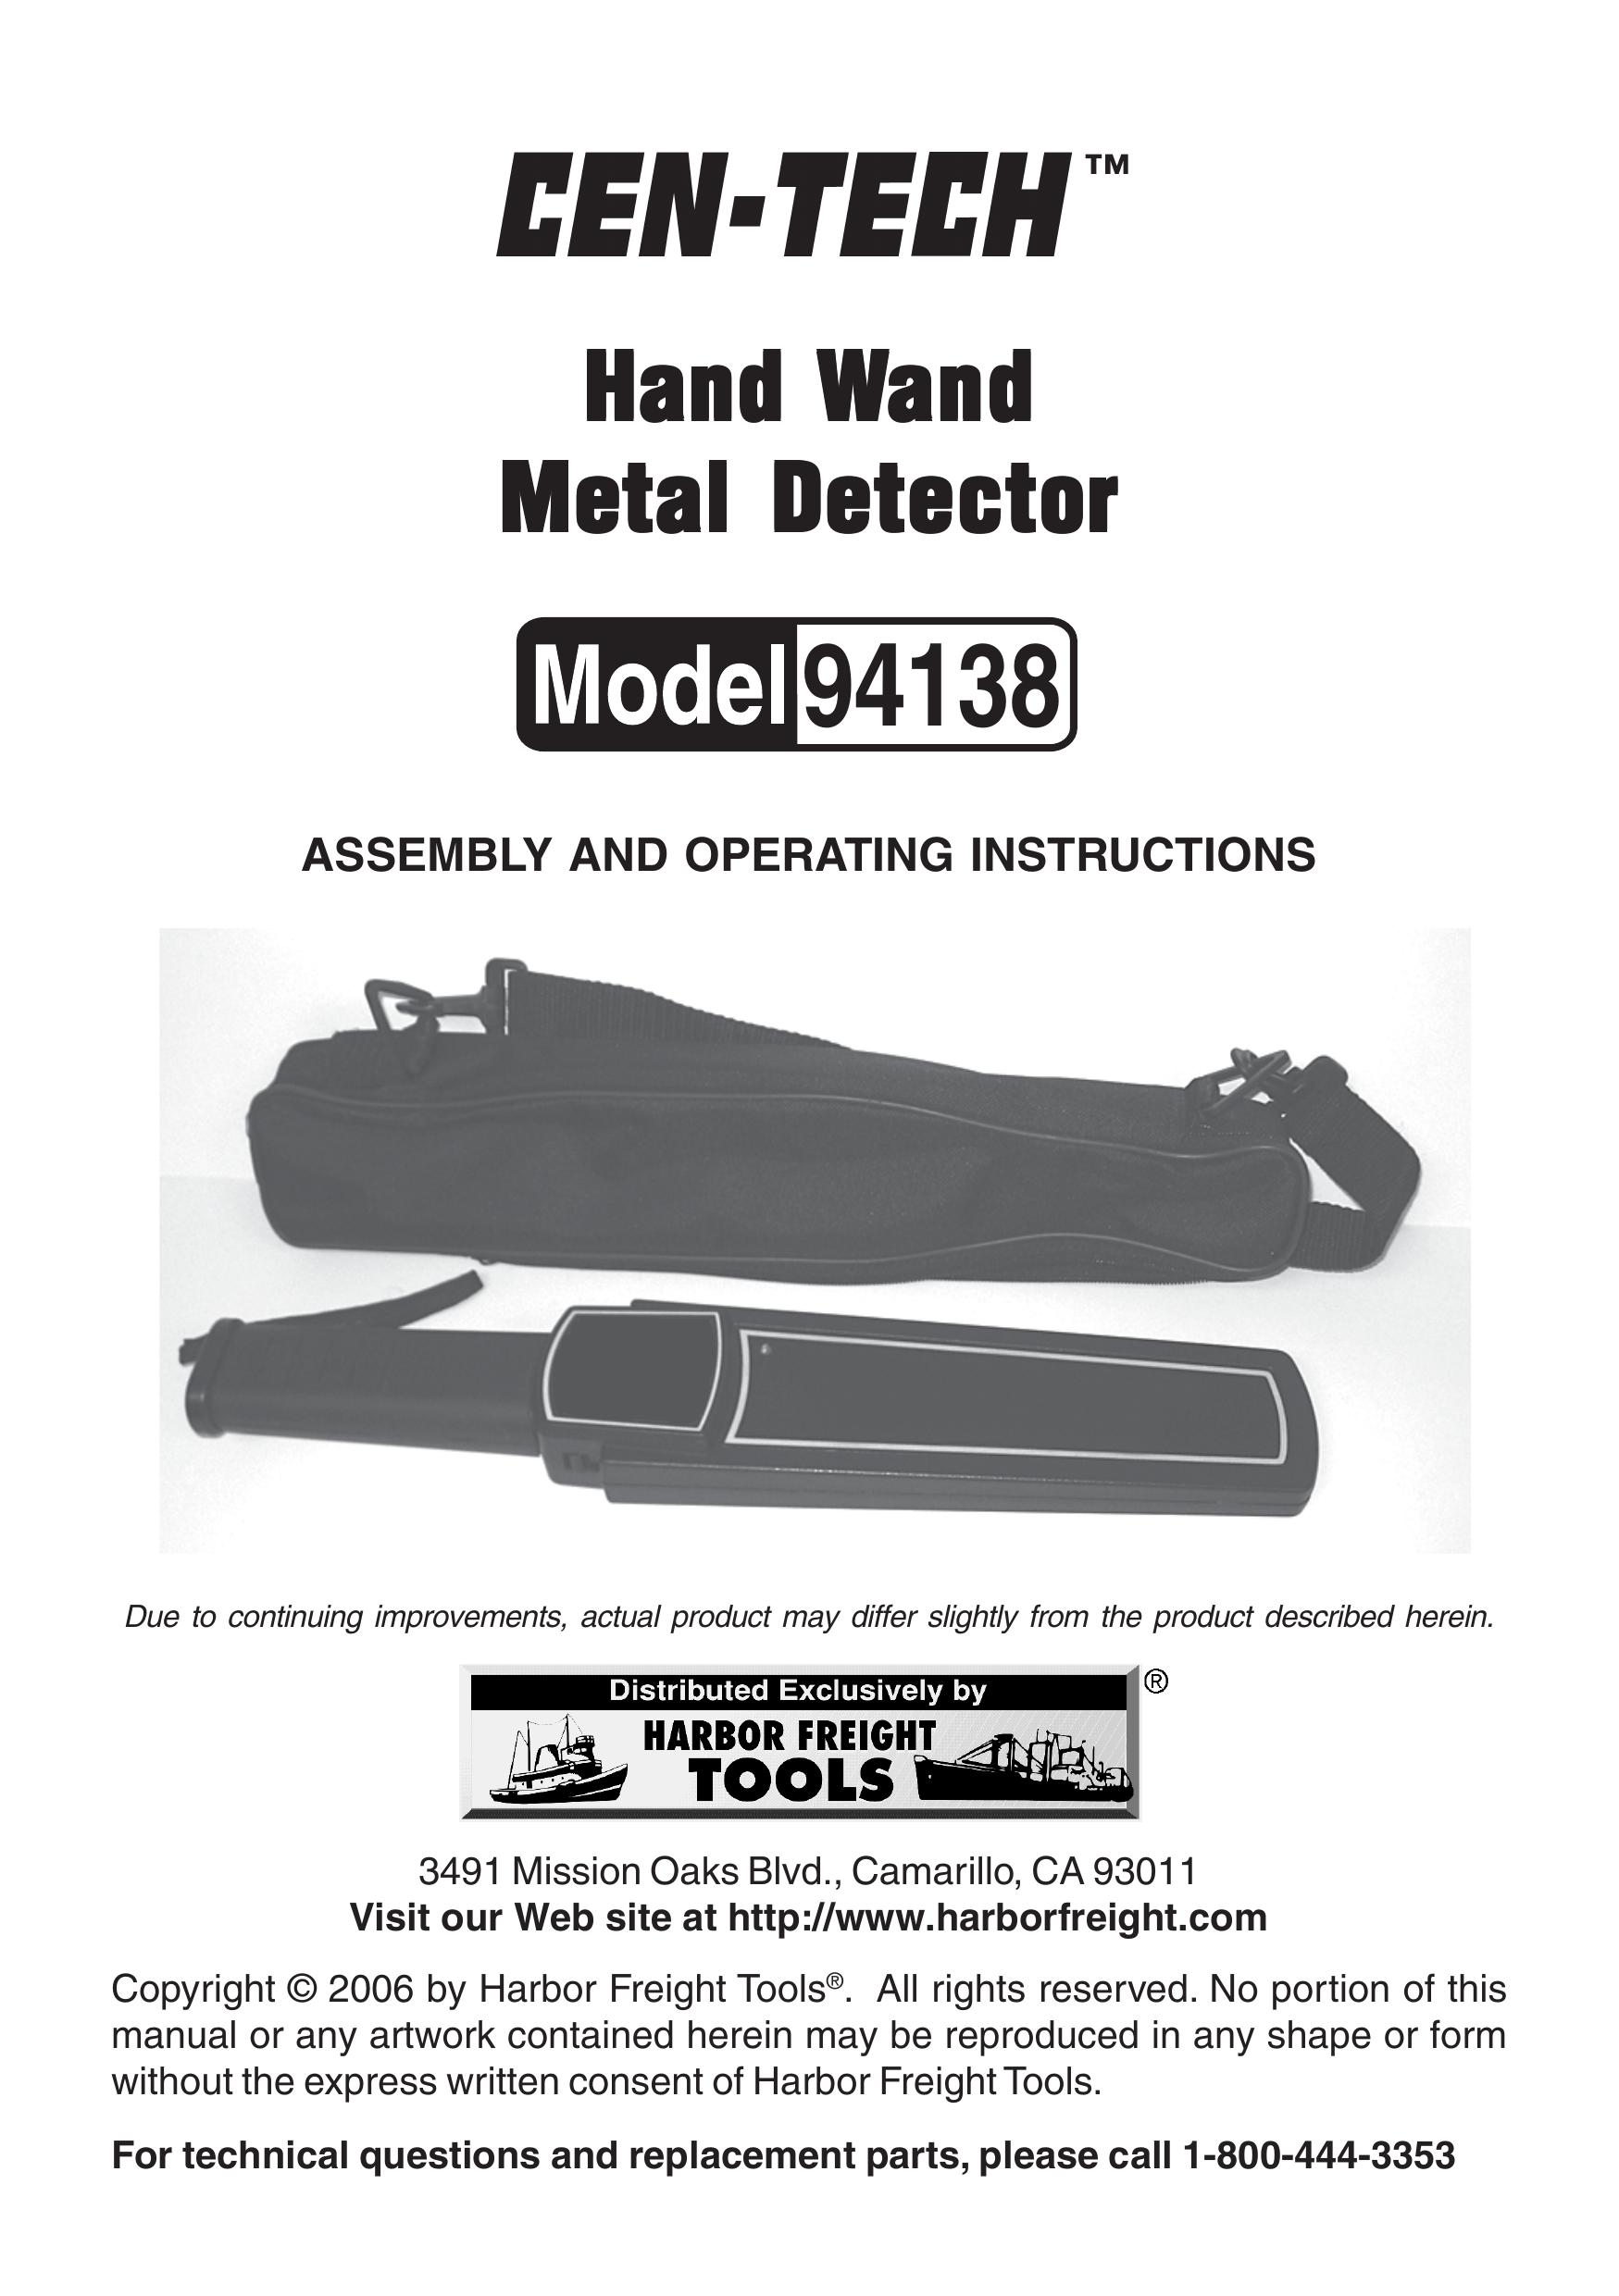 Harbor Freight Tools 94138 Metal Detector User Manual